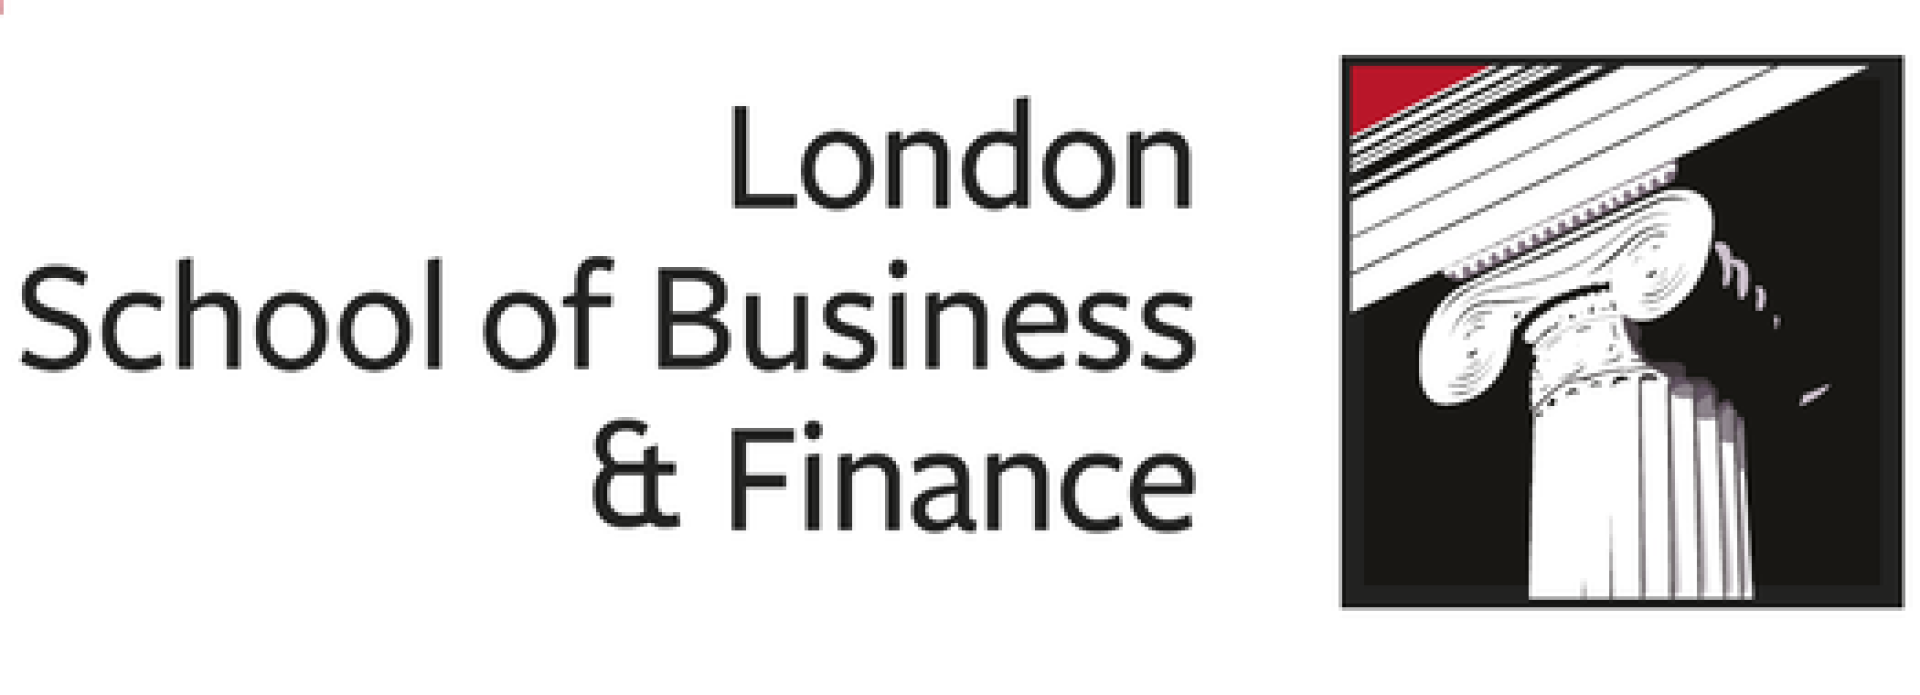 BSc (Hons) Financial Management